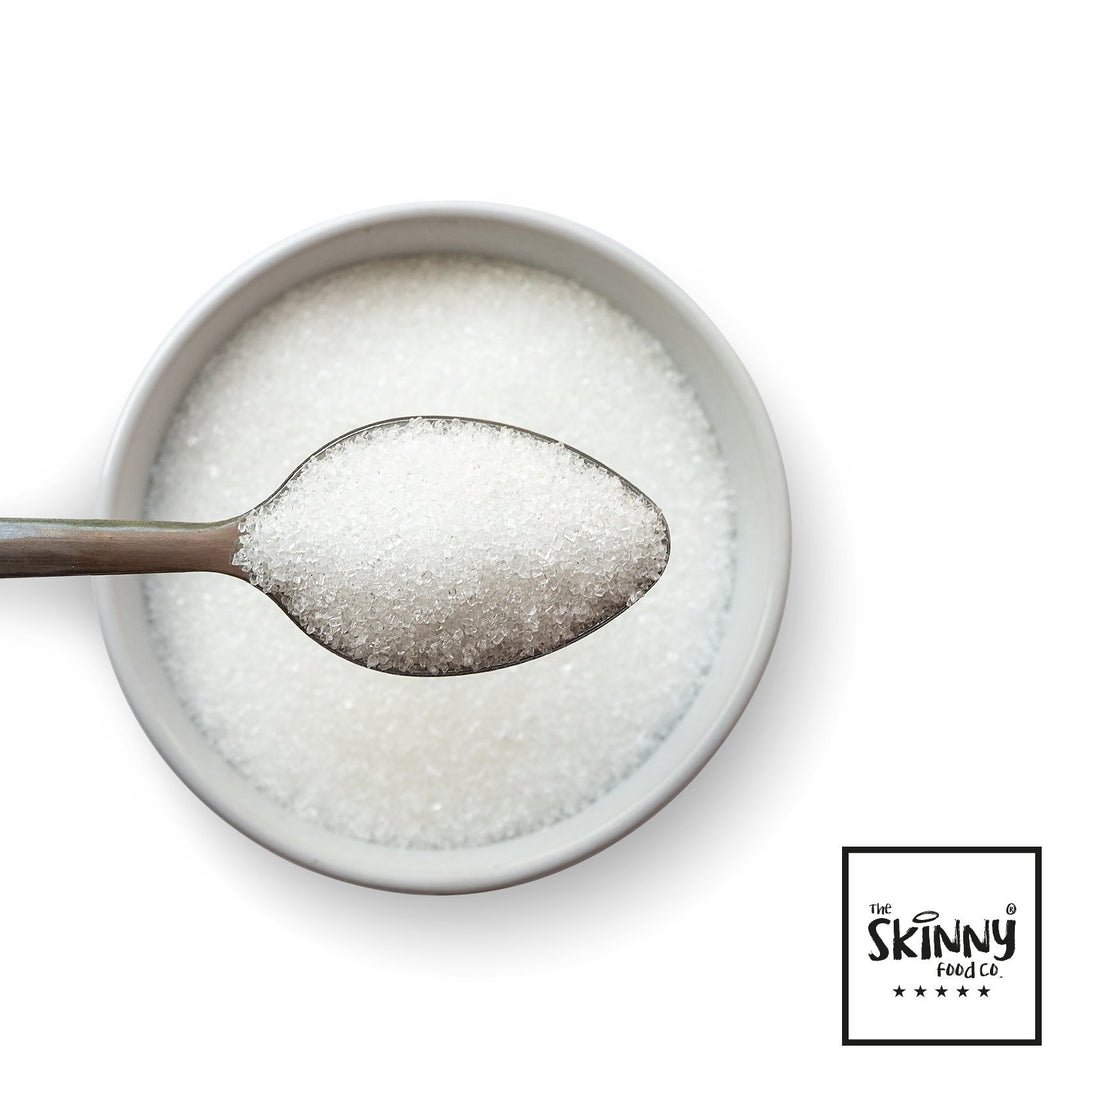 Scambi alimentari esperti per eliminare lo zucchero - theskinnyfoodco